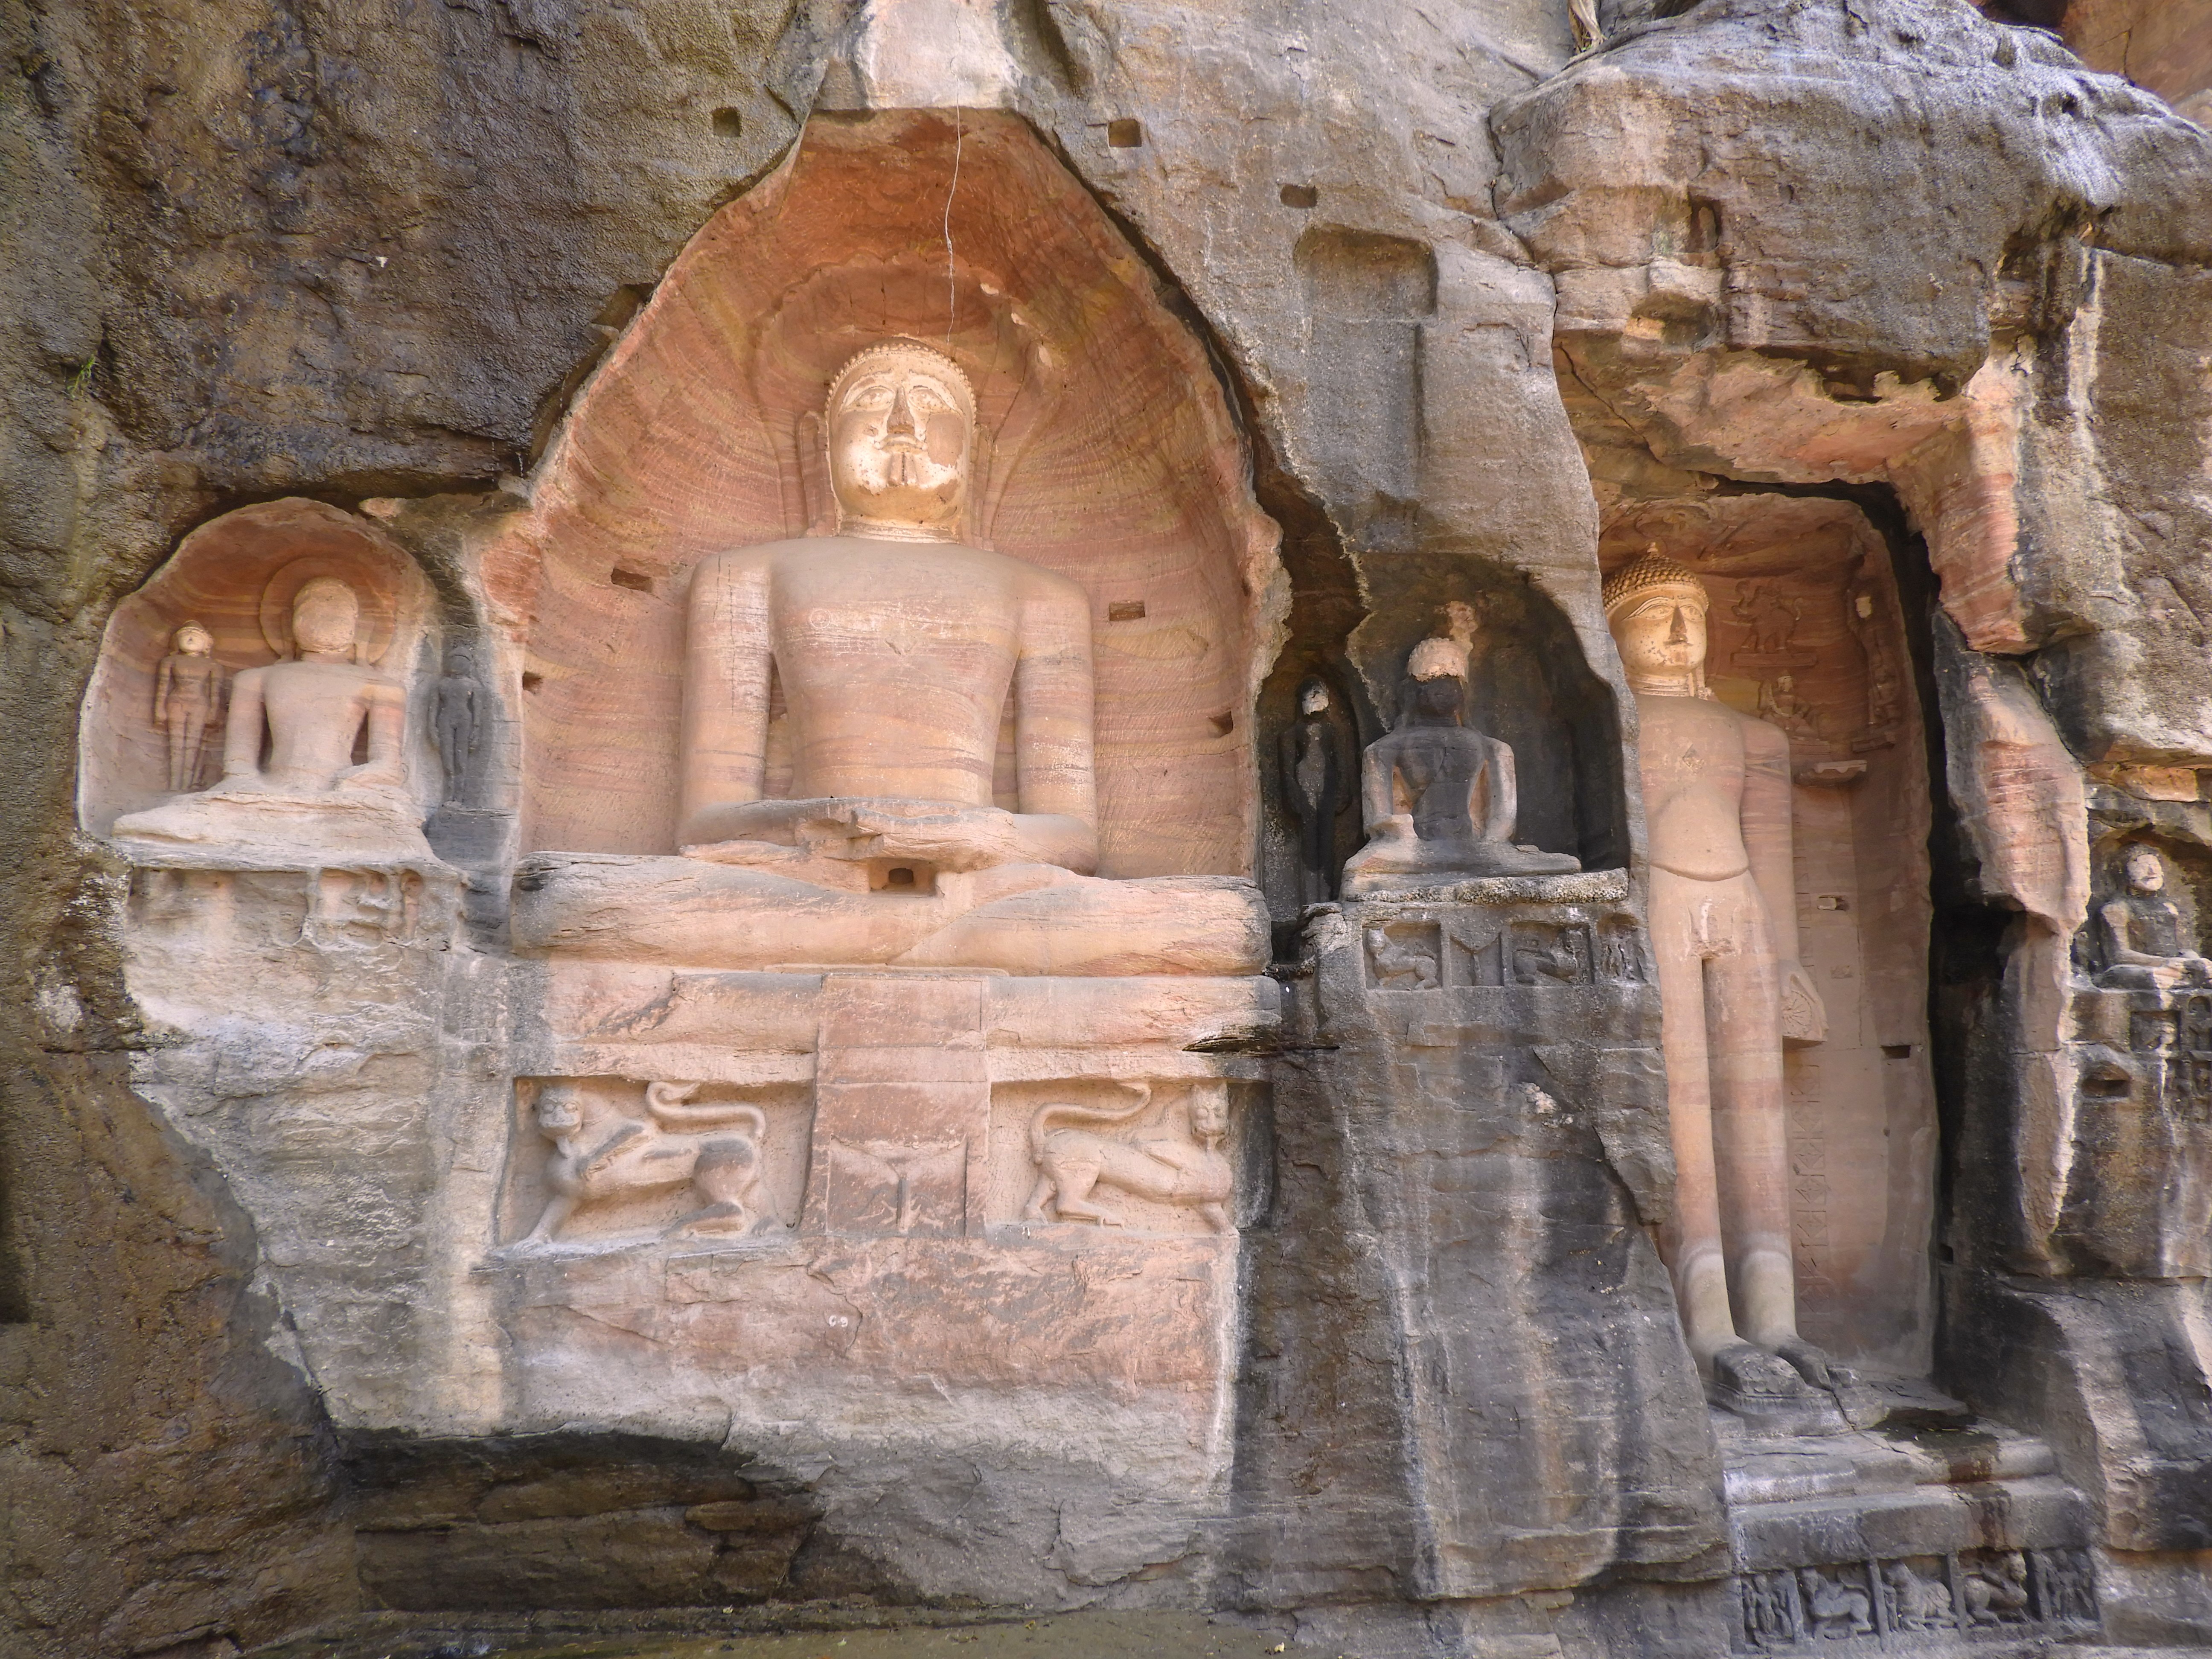 1237 - Antiche statue di Buddha nella roccia di Gwalior - India